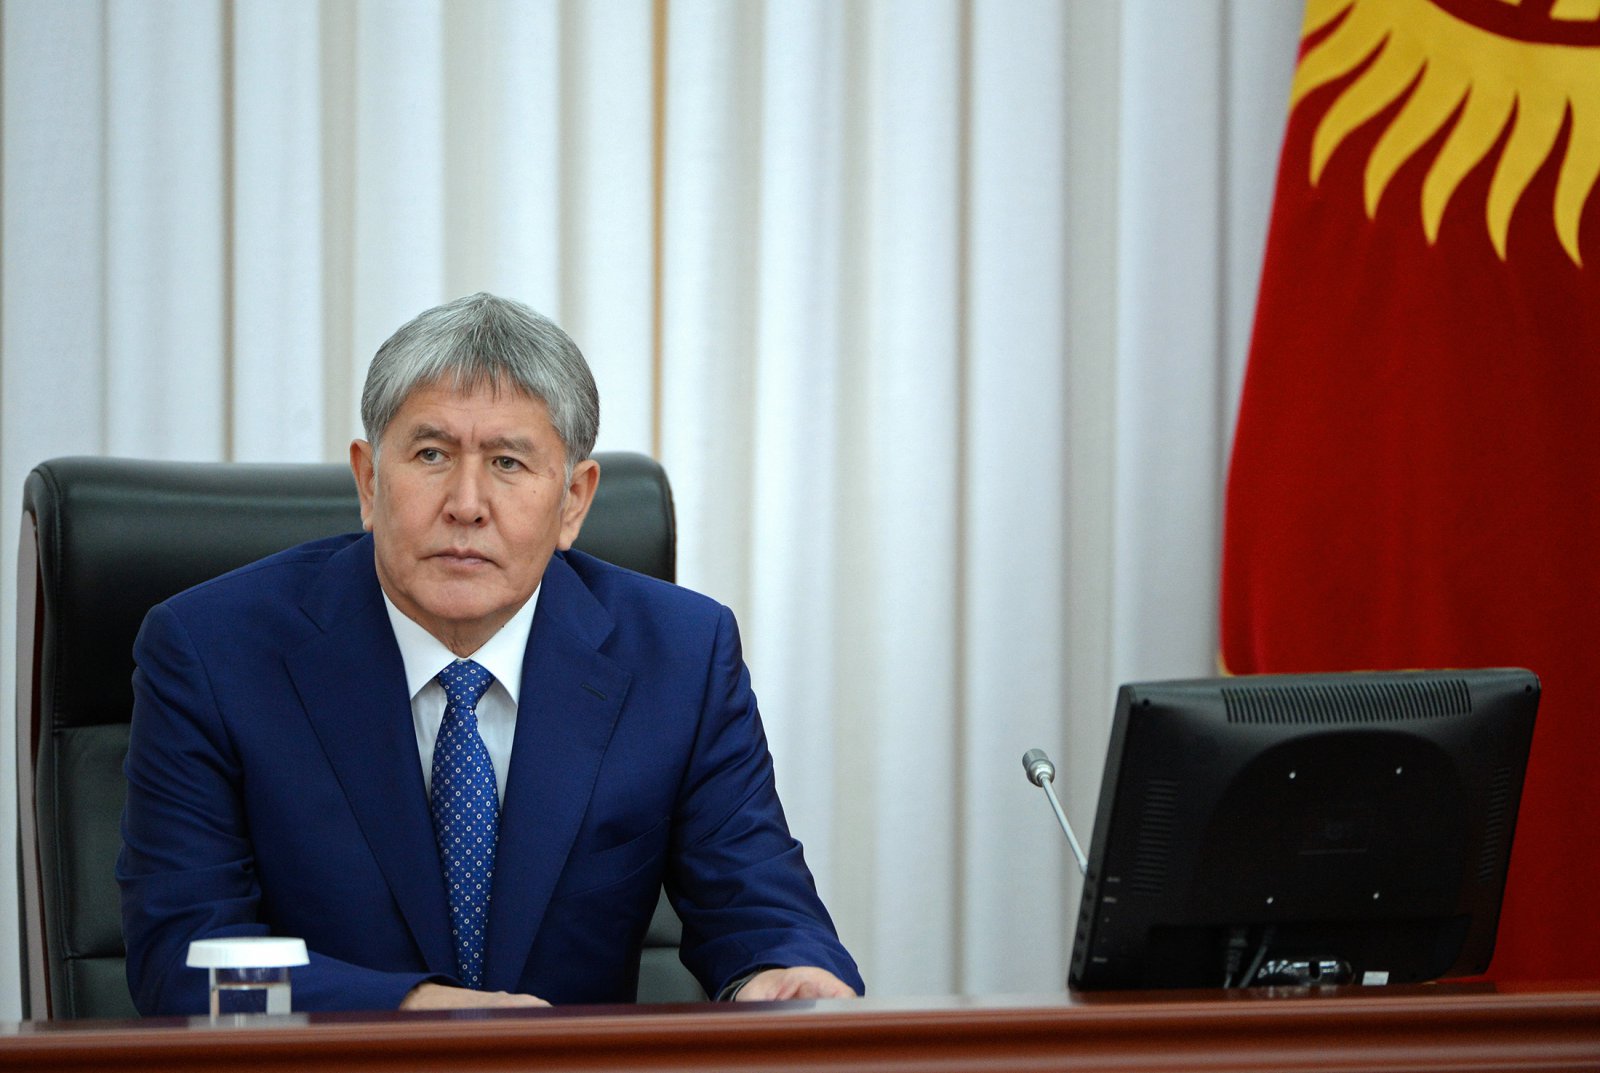 Сооронбай Жээнбеков: «Атамбаев был свидетелем, теперь будет обвиняемым»